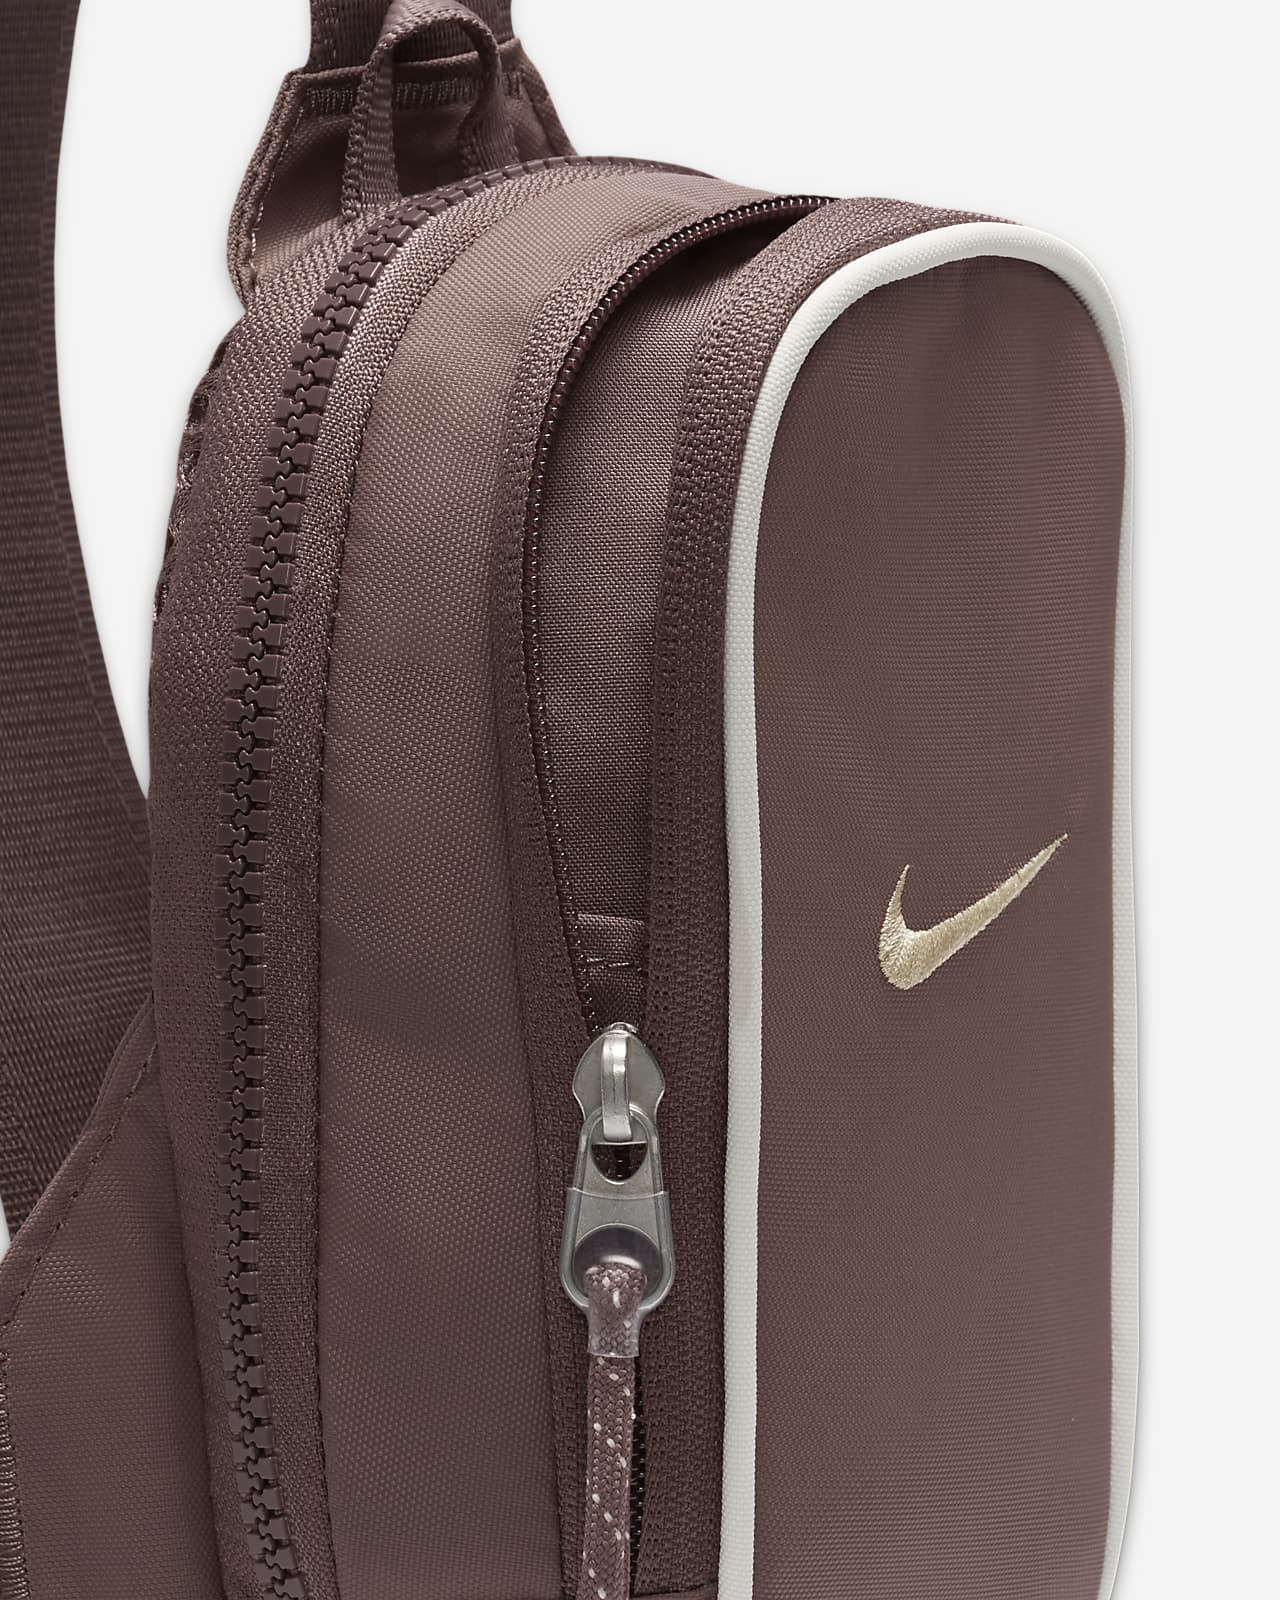 Ferie mel Dem Nike Sportswear Essentials-crossbody-taske (1 liter). Nike DK